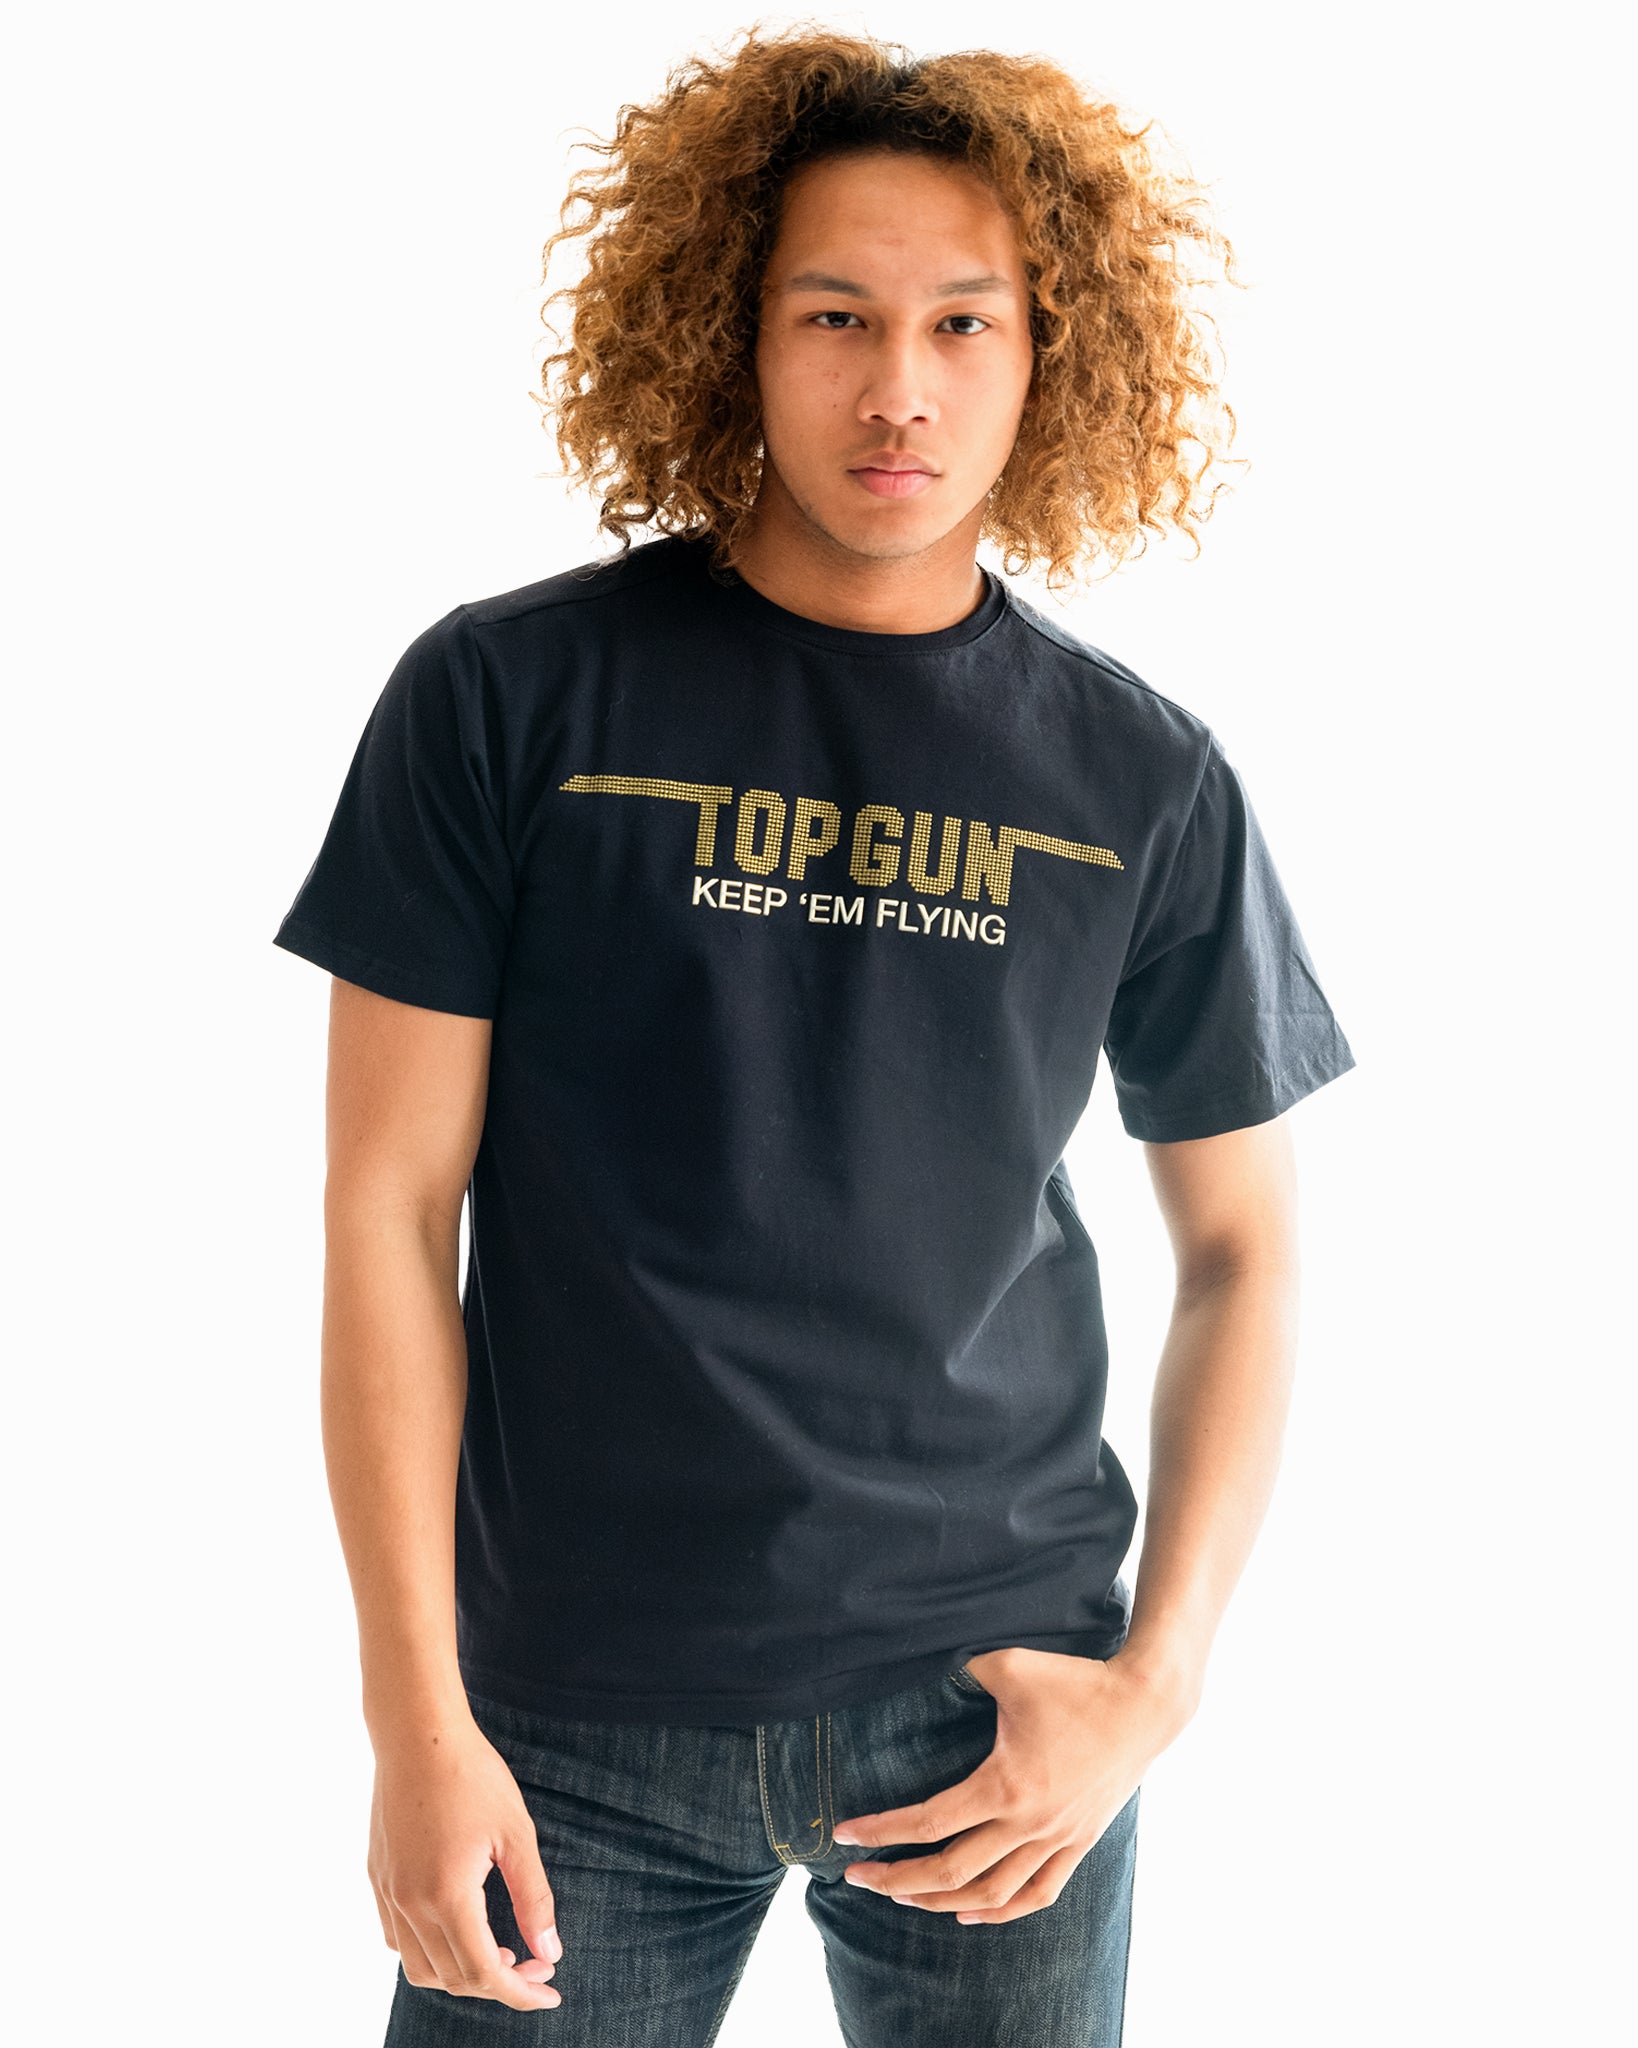 | T-Shirts Tees – Store GUN Tees STORE OFFICIAL top THE Tees, Cotton Gun movie | Men\'s gun Best & merchandise, Summer Men\'s T-Shirts, TOP Top